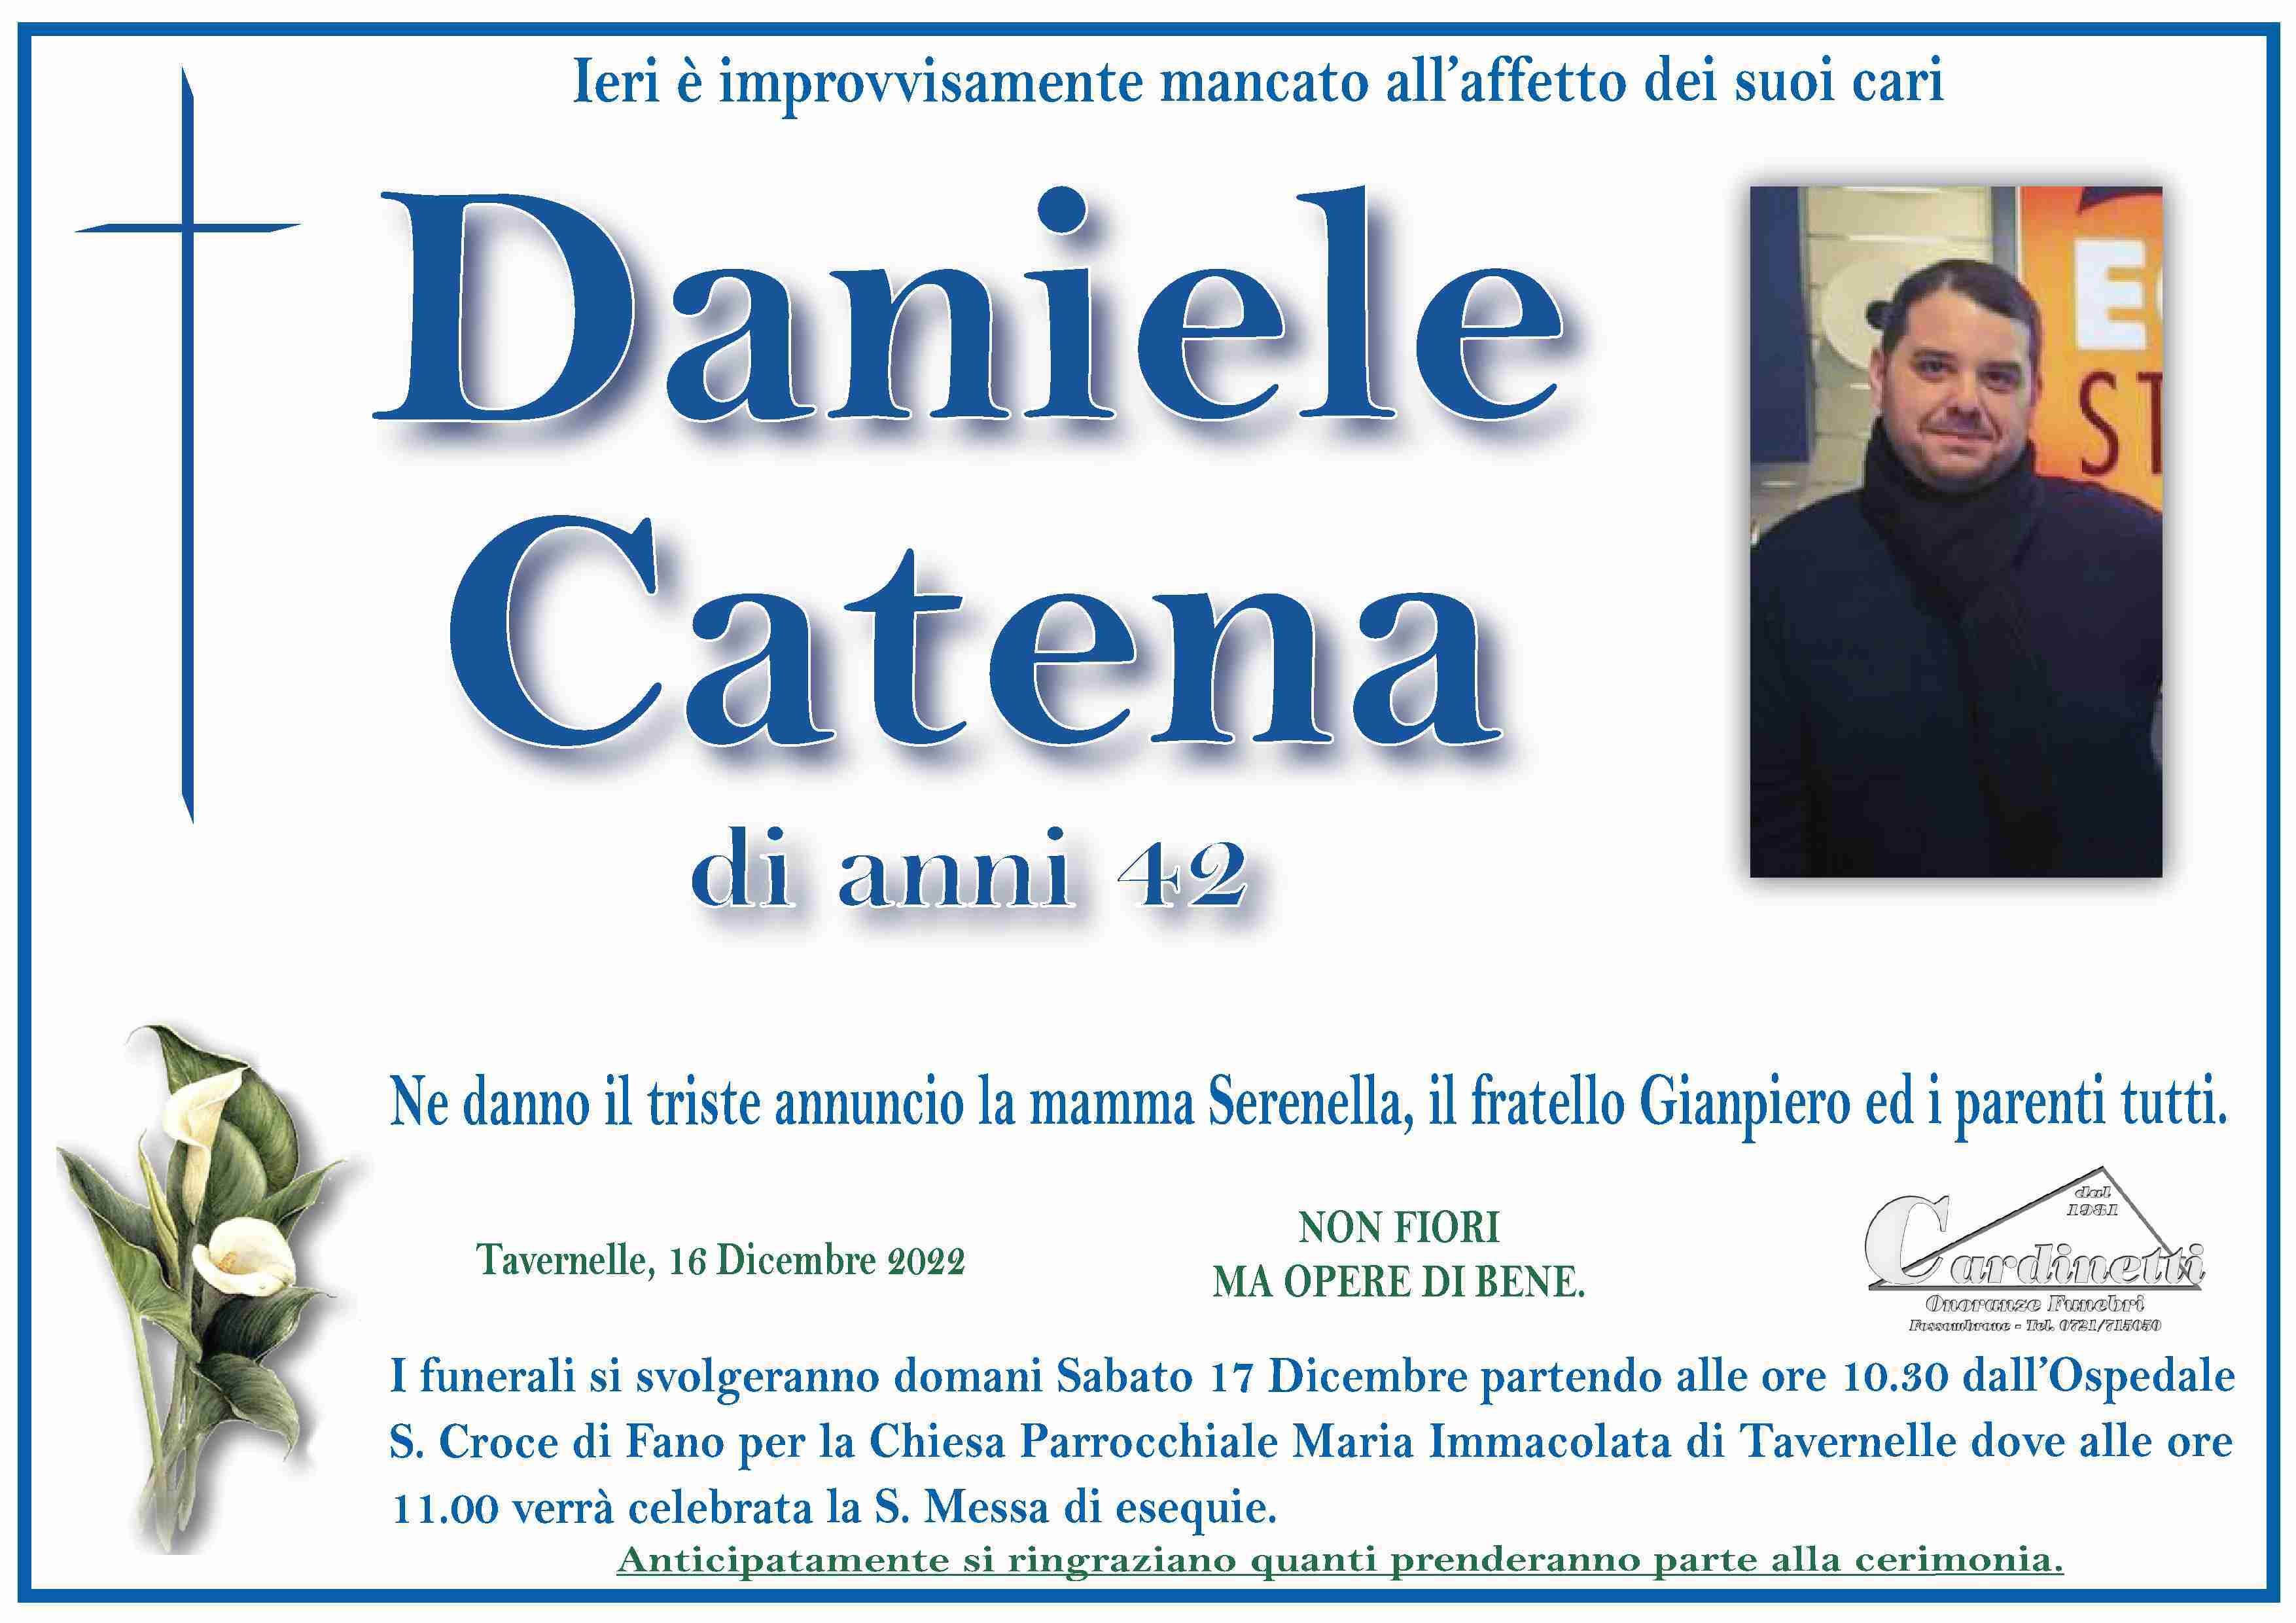 Daniele Catena